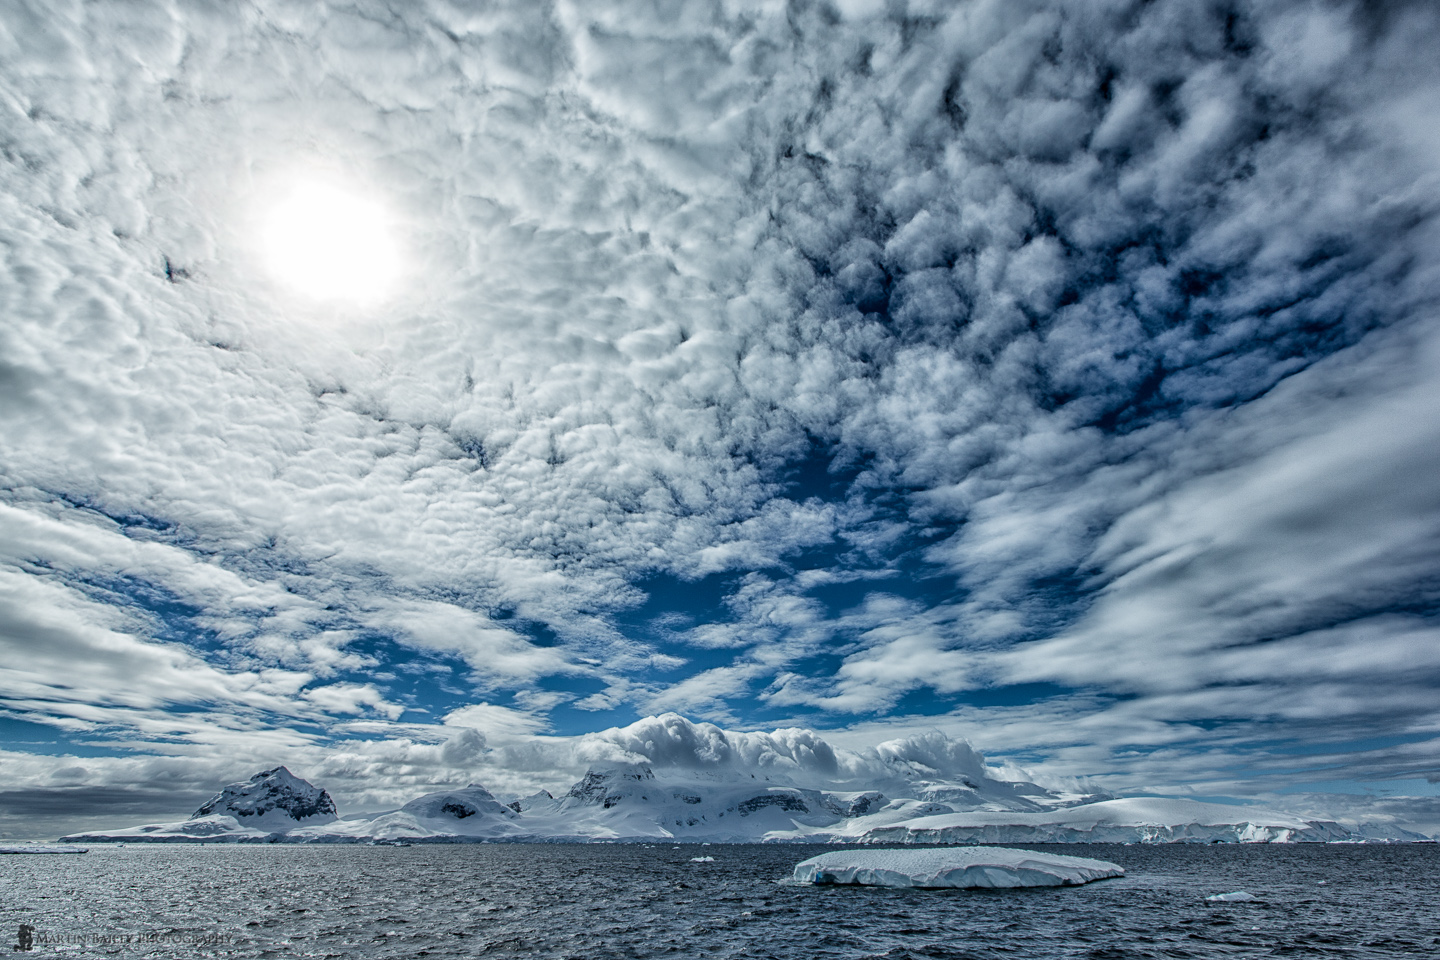 Ледяная экзотика - Антарктида в фотографиях Мартина Бэйли